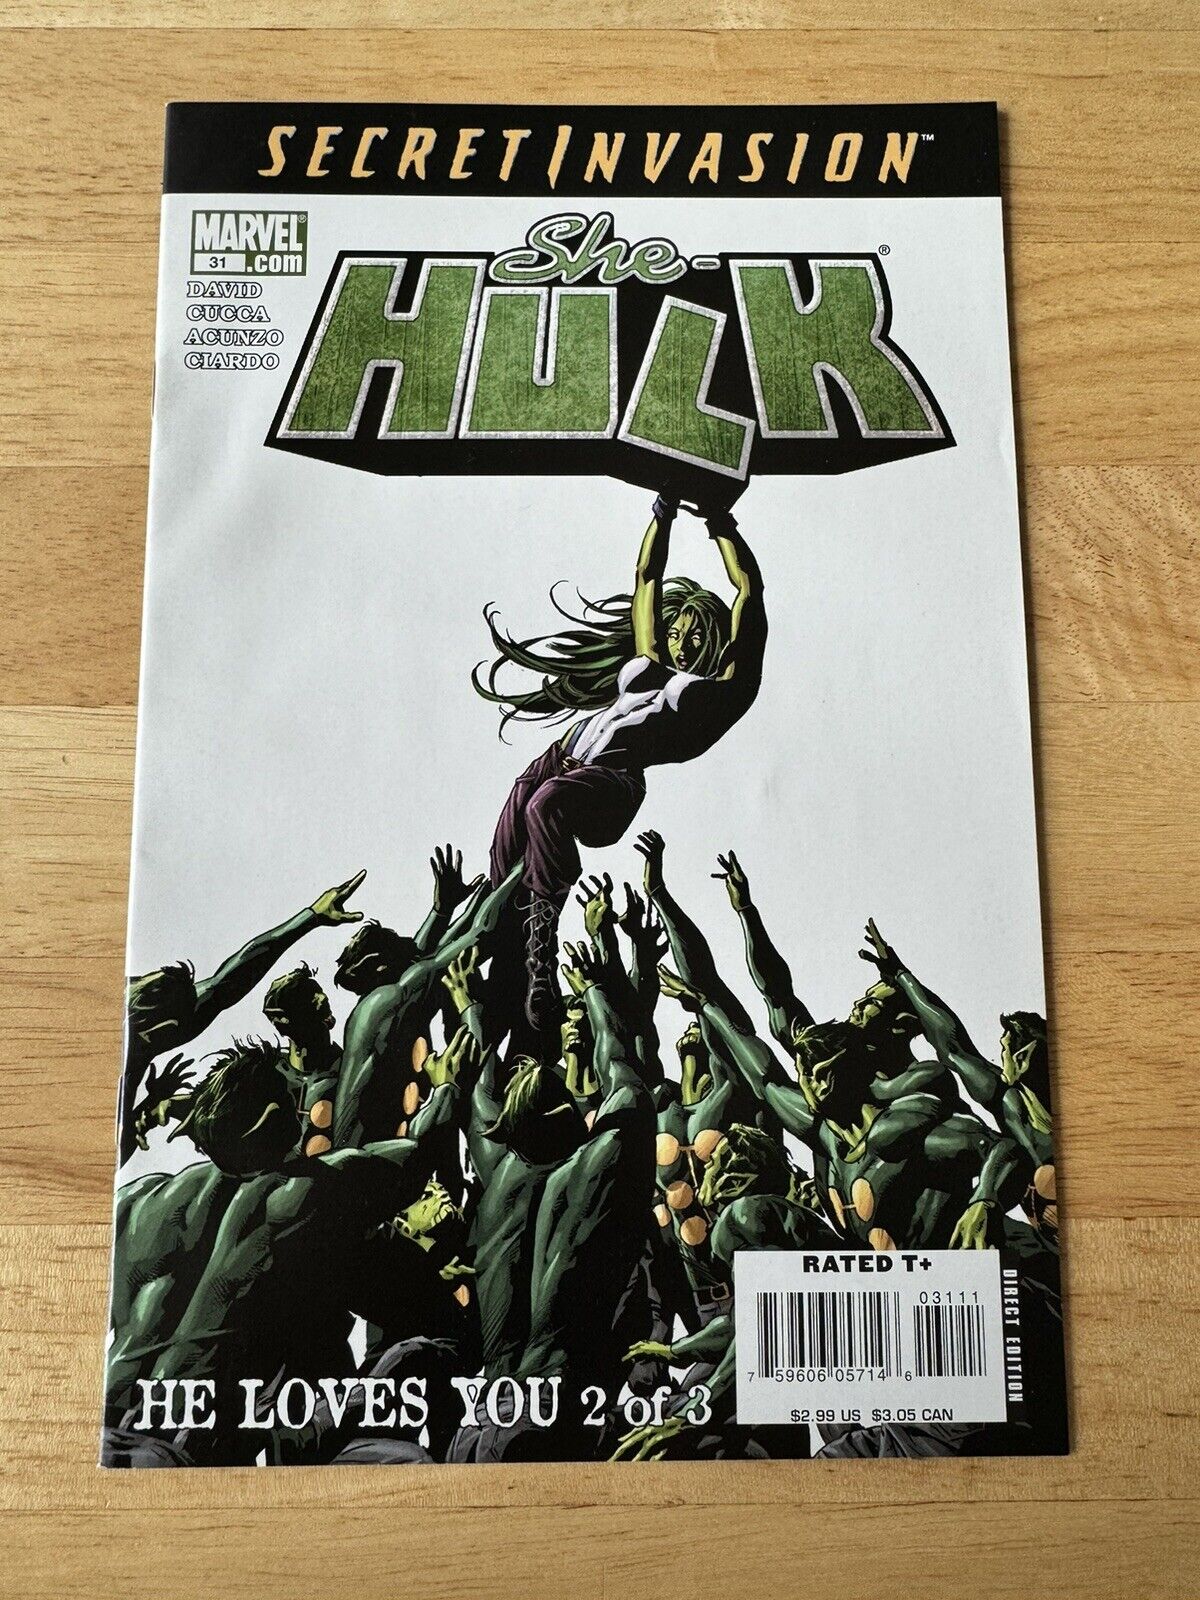 2008 She-Hulk #31 Volume 2 Marvel Comics Secret Invasion